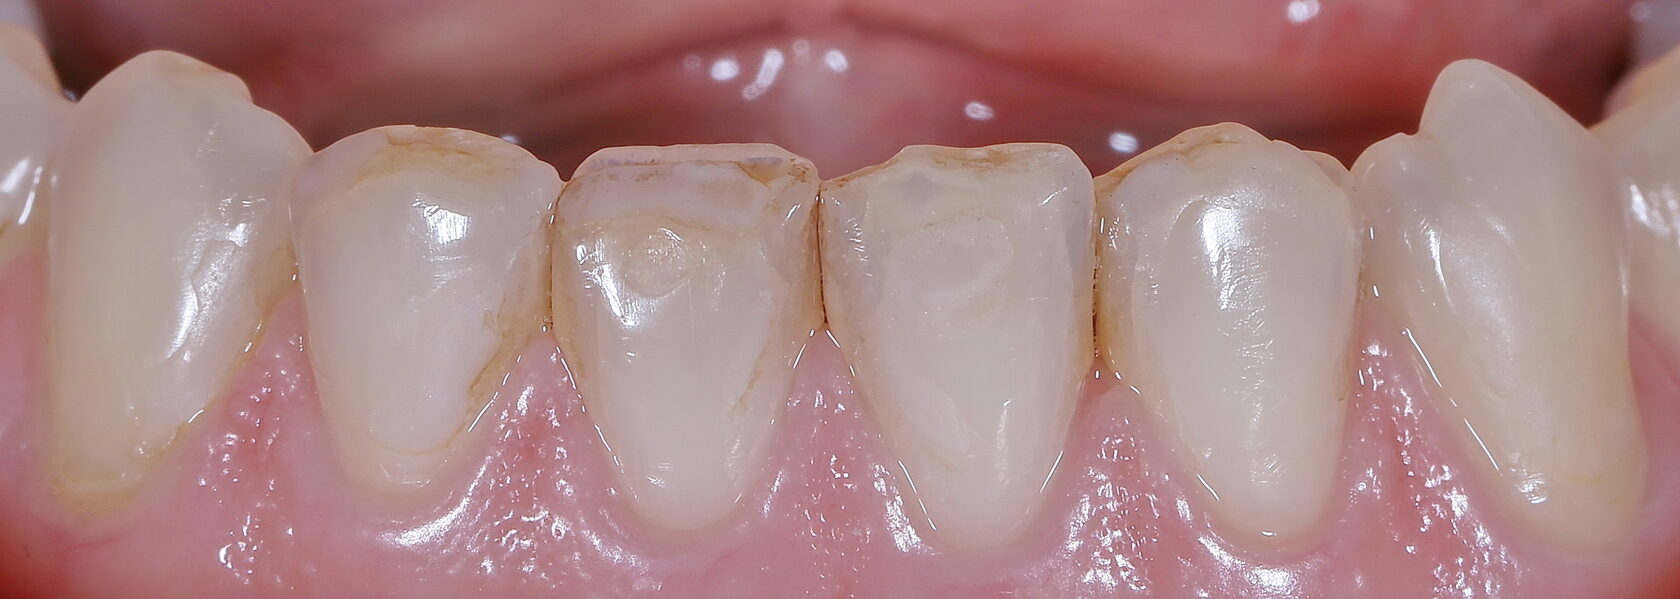 Что такое художественная реставрация зубов ▶️ Eurodent